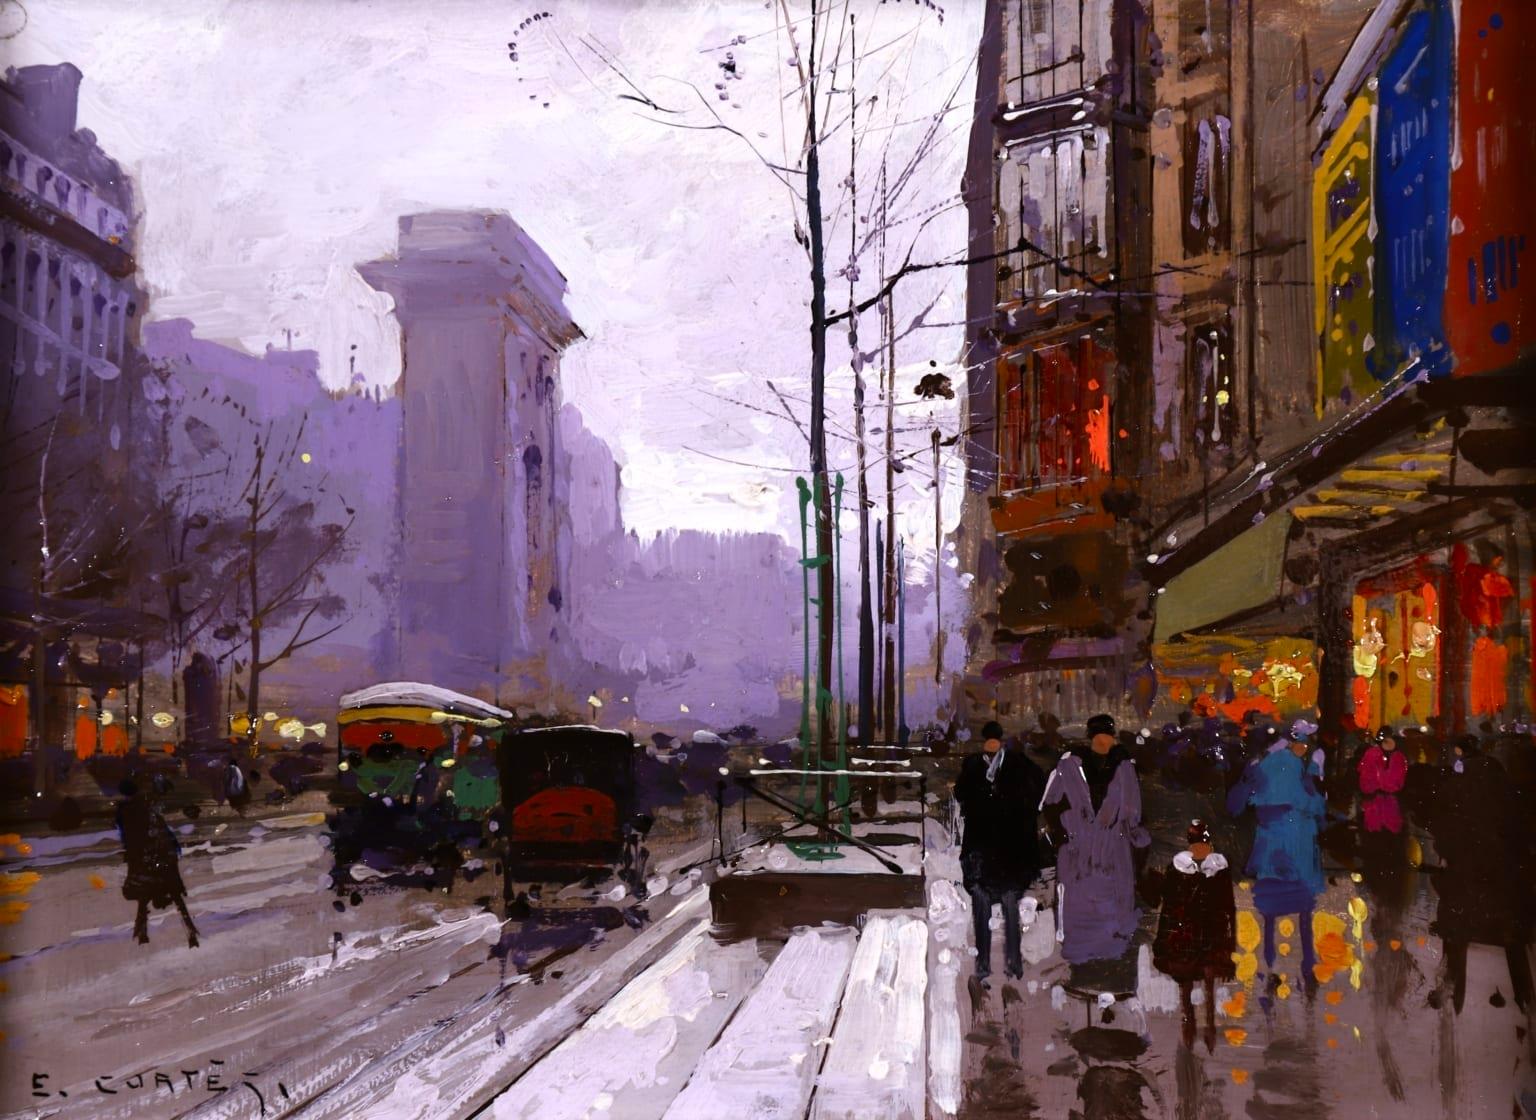 Paris after the Rain - Impressionist Oil, Figures in Cityscape by E L Cortès